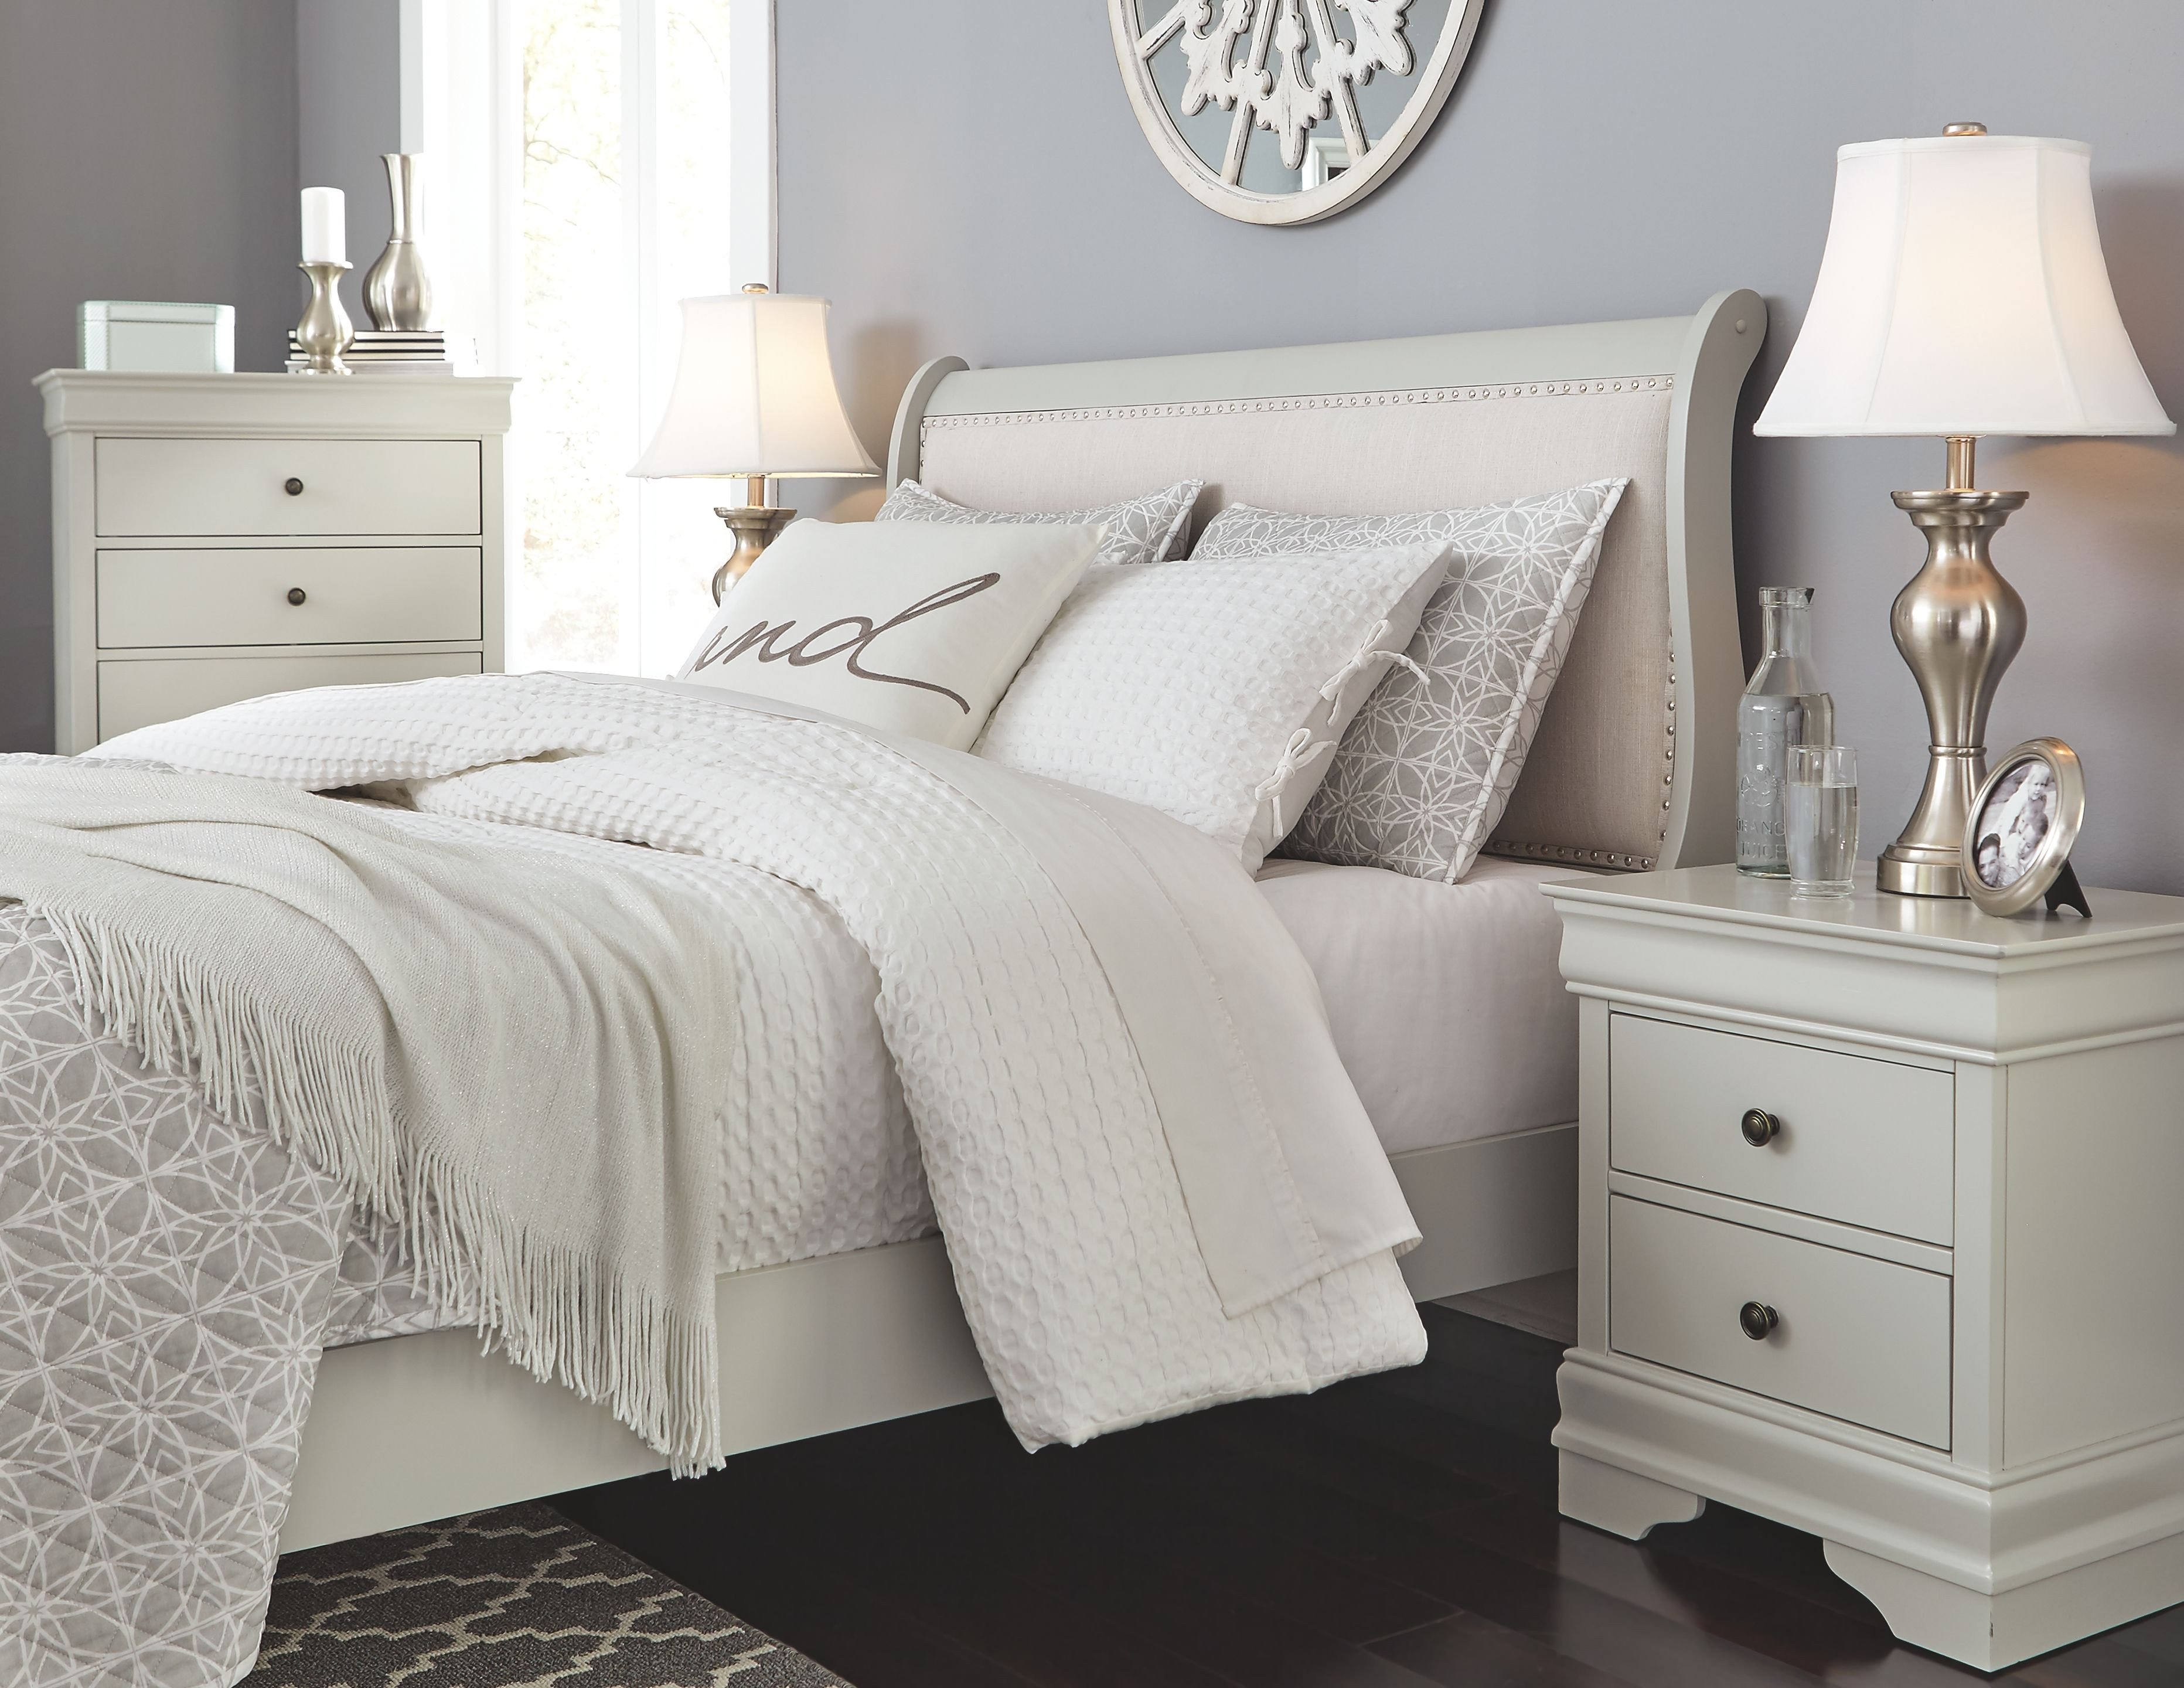 Grey and Burgundy Bedroom Elegant Jorstad Full Bed with 2 Nightstands Gray